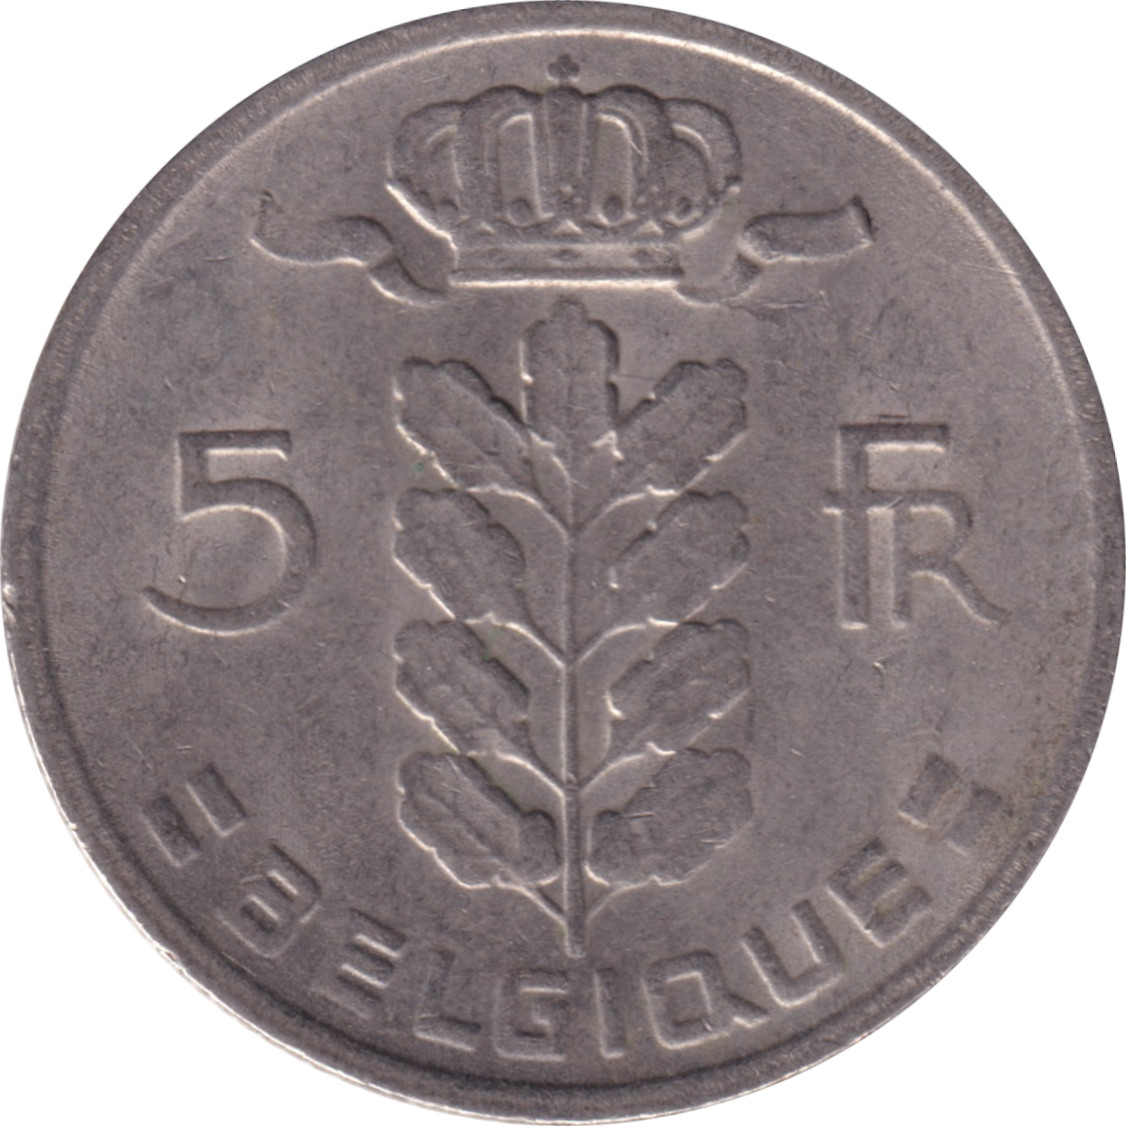 5 francs - Cérès